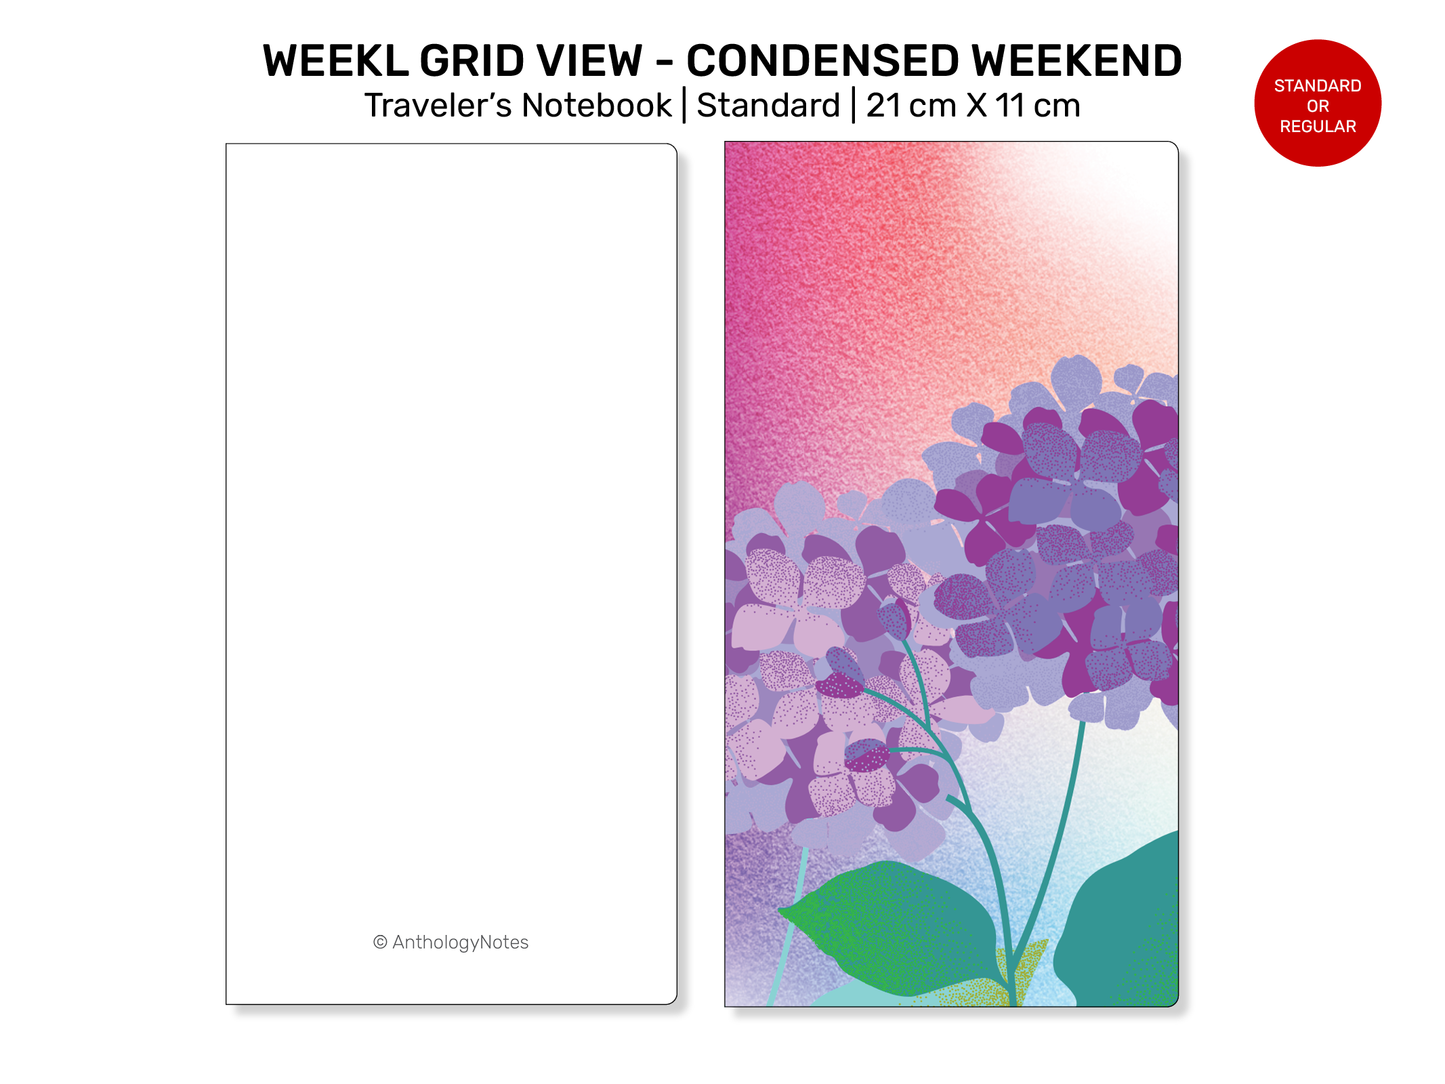 TN Standard Weekly View Horizontal Full GRID - CONDENSED Weekend RTN22-018